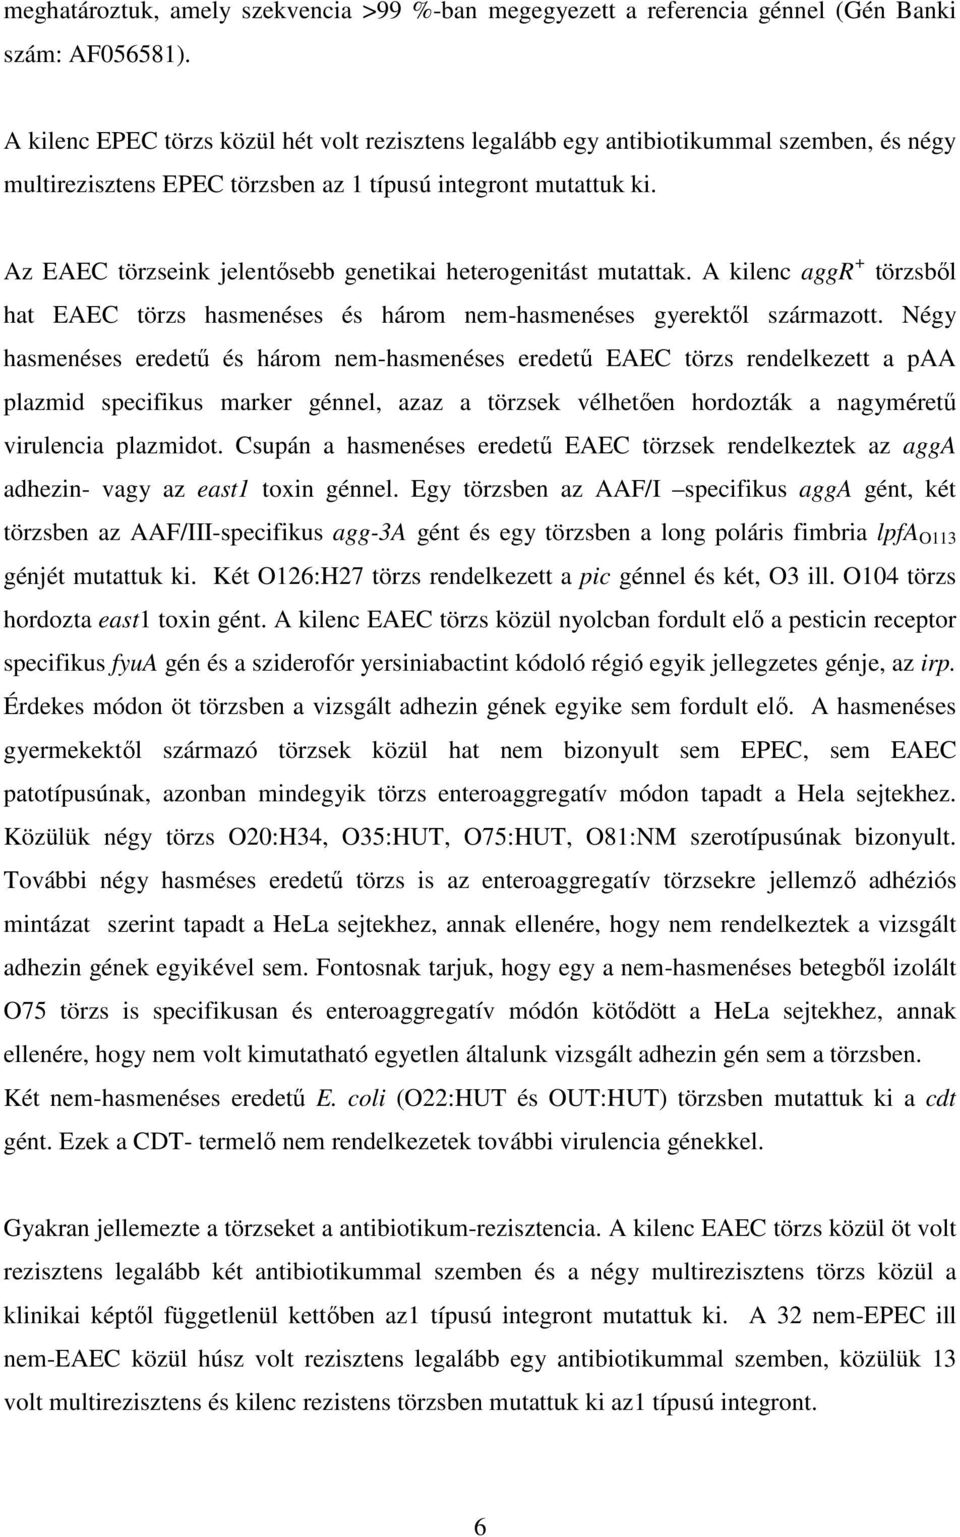 Az EAEC törzseink jelentısebb genetikai heterogenitást mutattak. A kilenc aggr + törzsbıl hat EAEC törzs hasmenéses és három nem-hasmenéses gyerektıl származott.